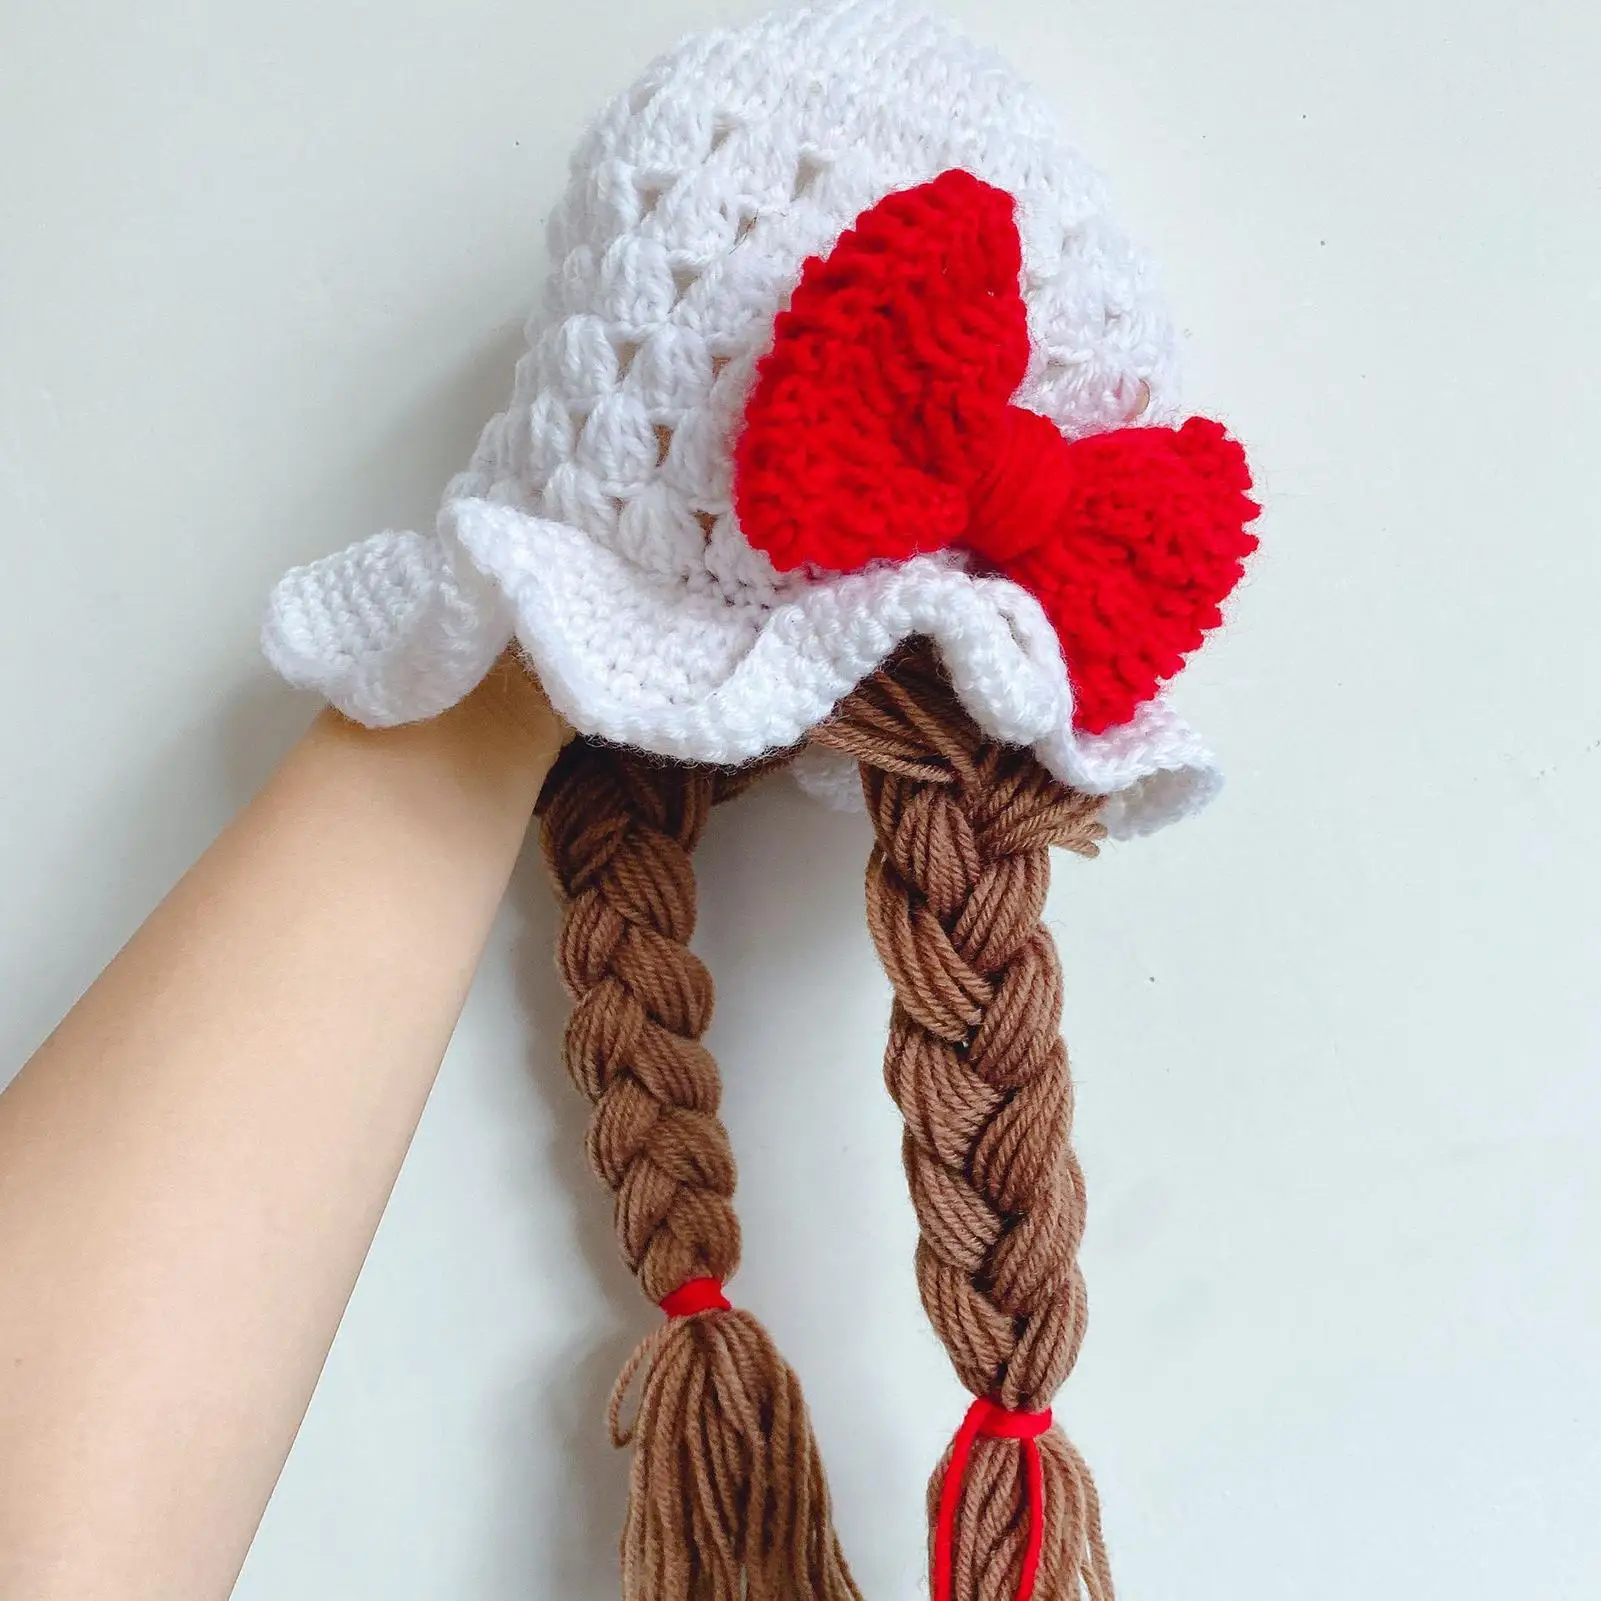 

Baby Girls Braided Wig Woolen Yarn Knitted Hat Sunflower Cherry Cap Photo Prop